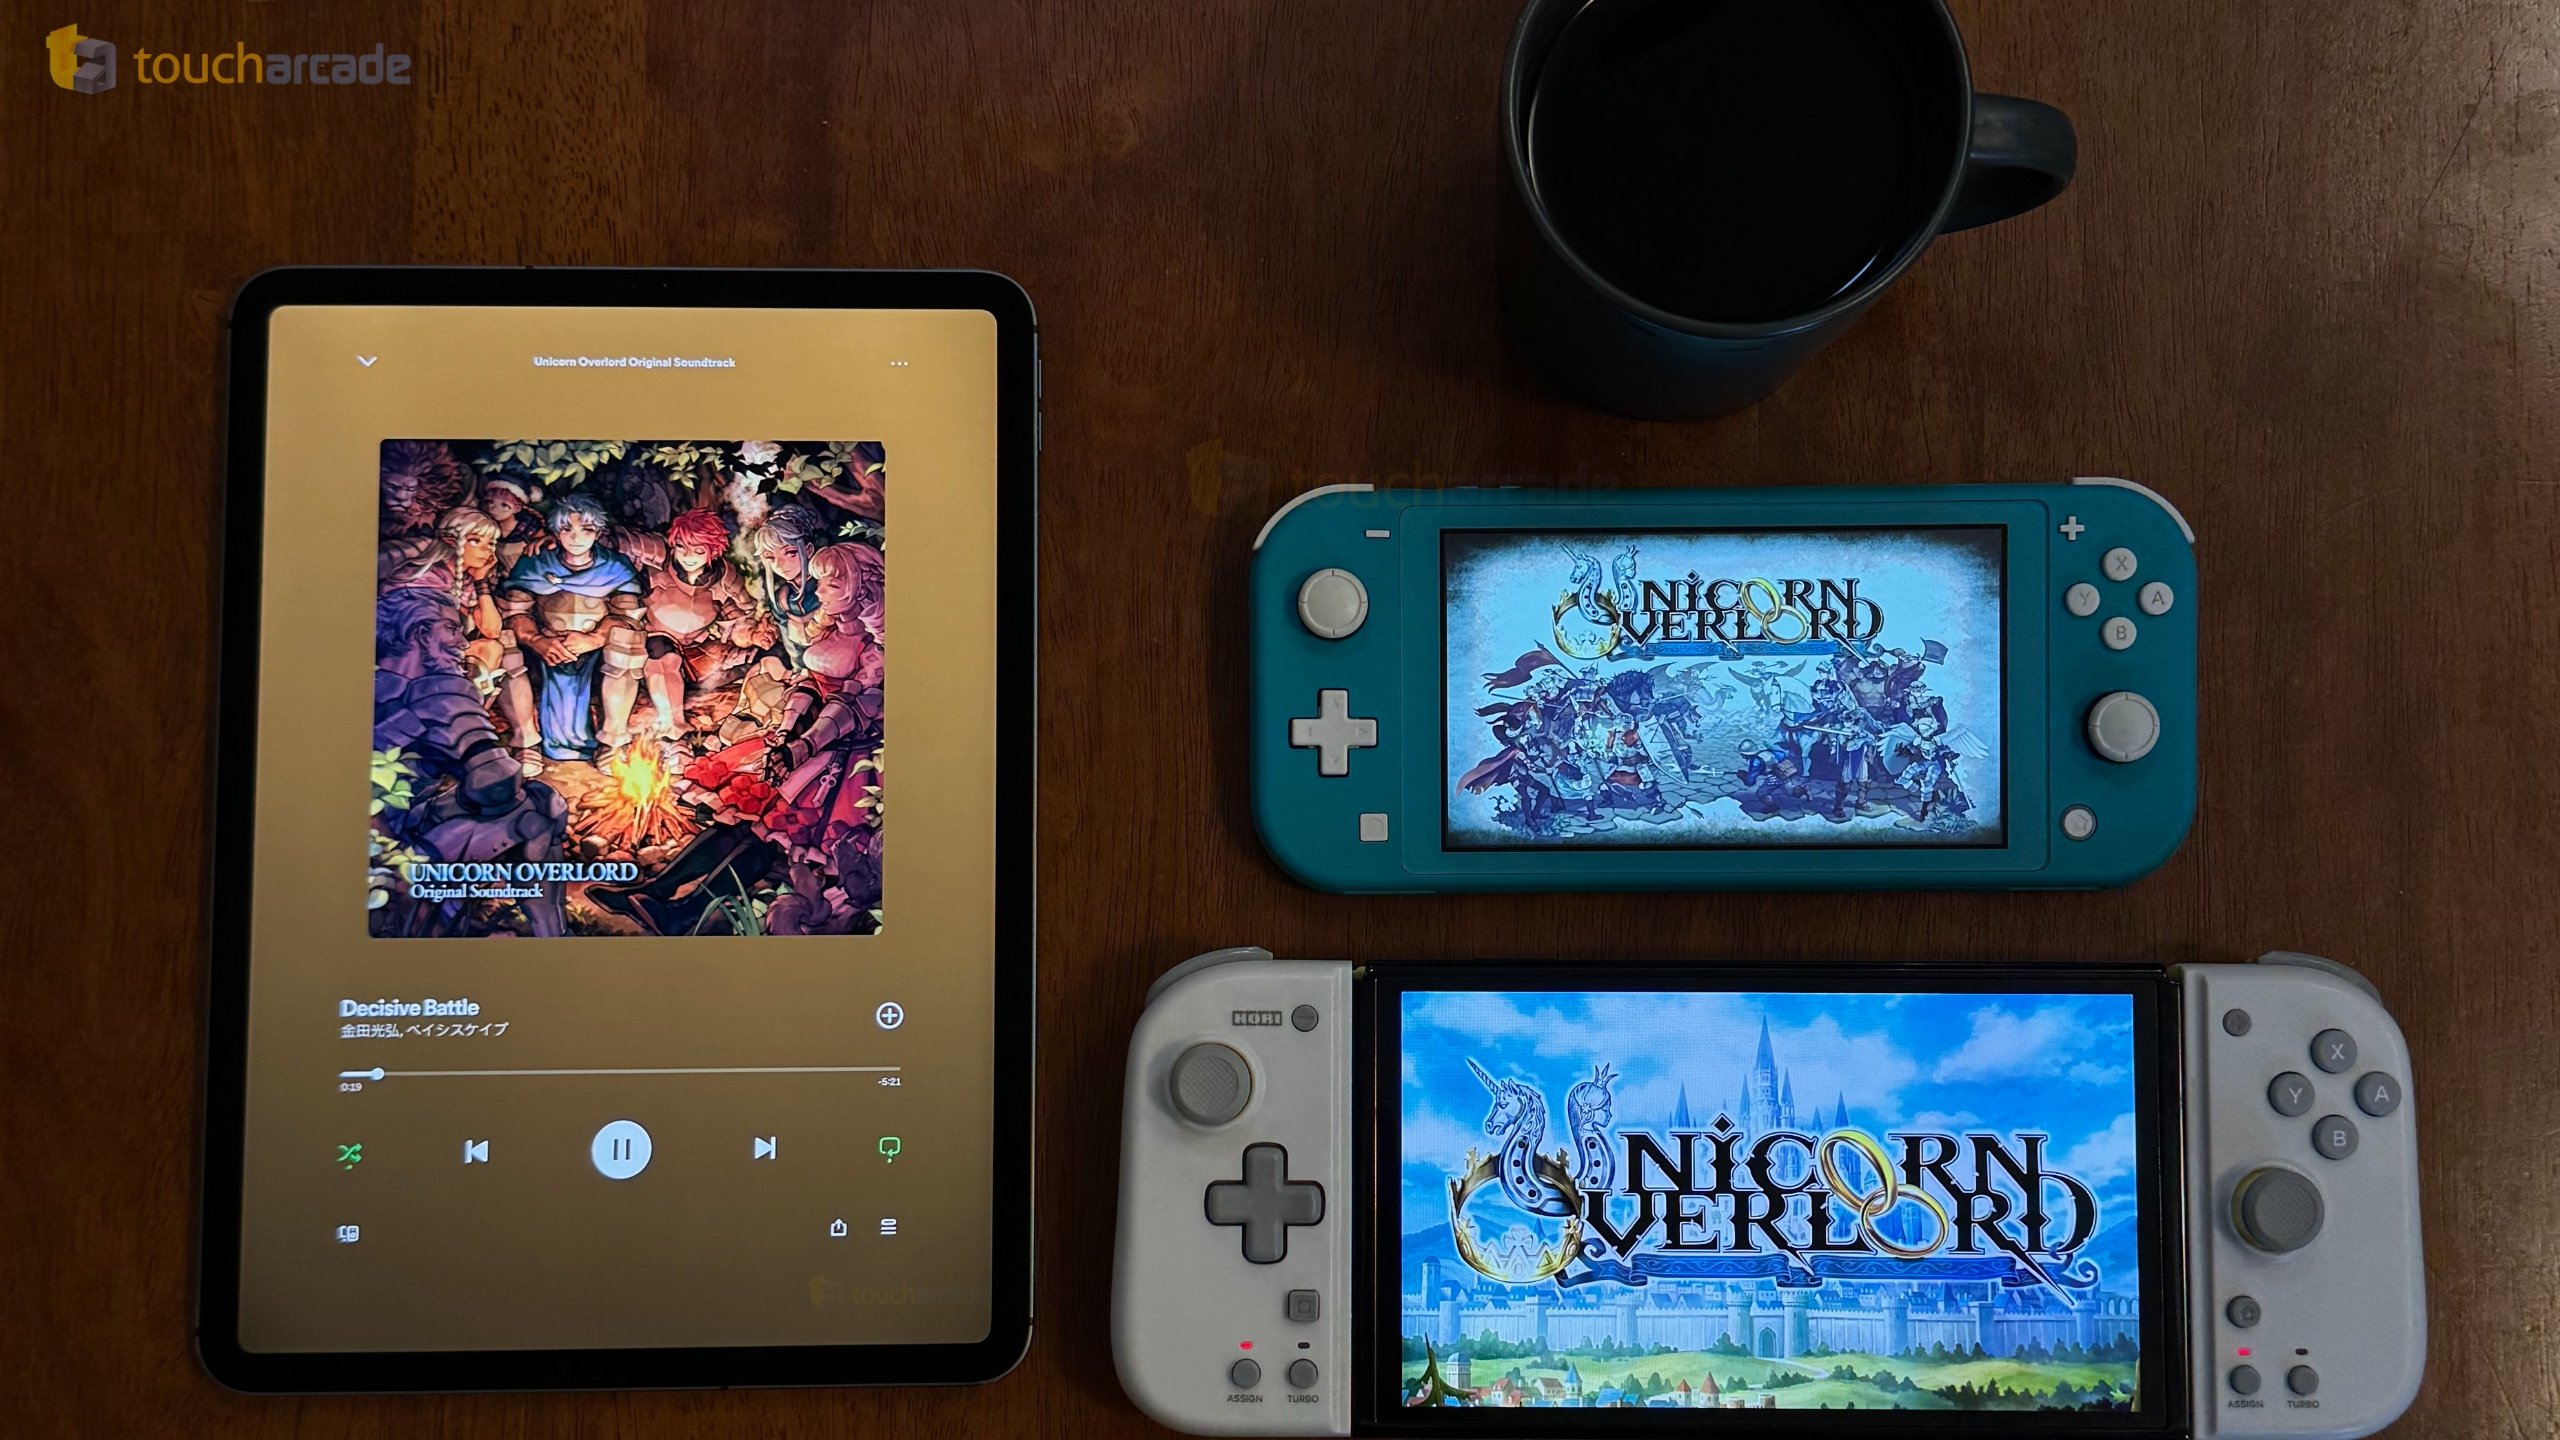 Mario Day News, vélemények az „Unicorn Overlord”-ról, valamint új kiadások és értékesítések – TouchArcade